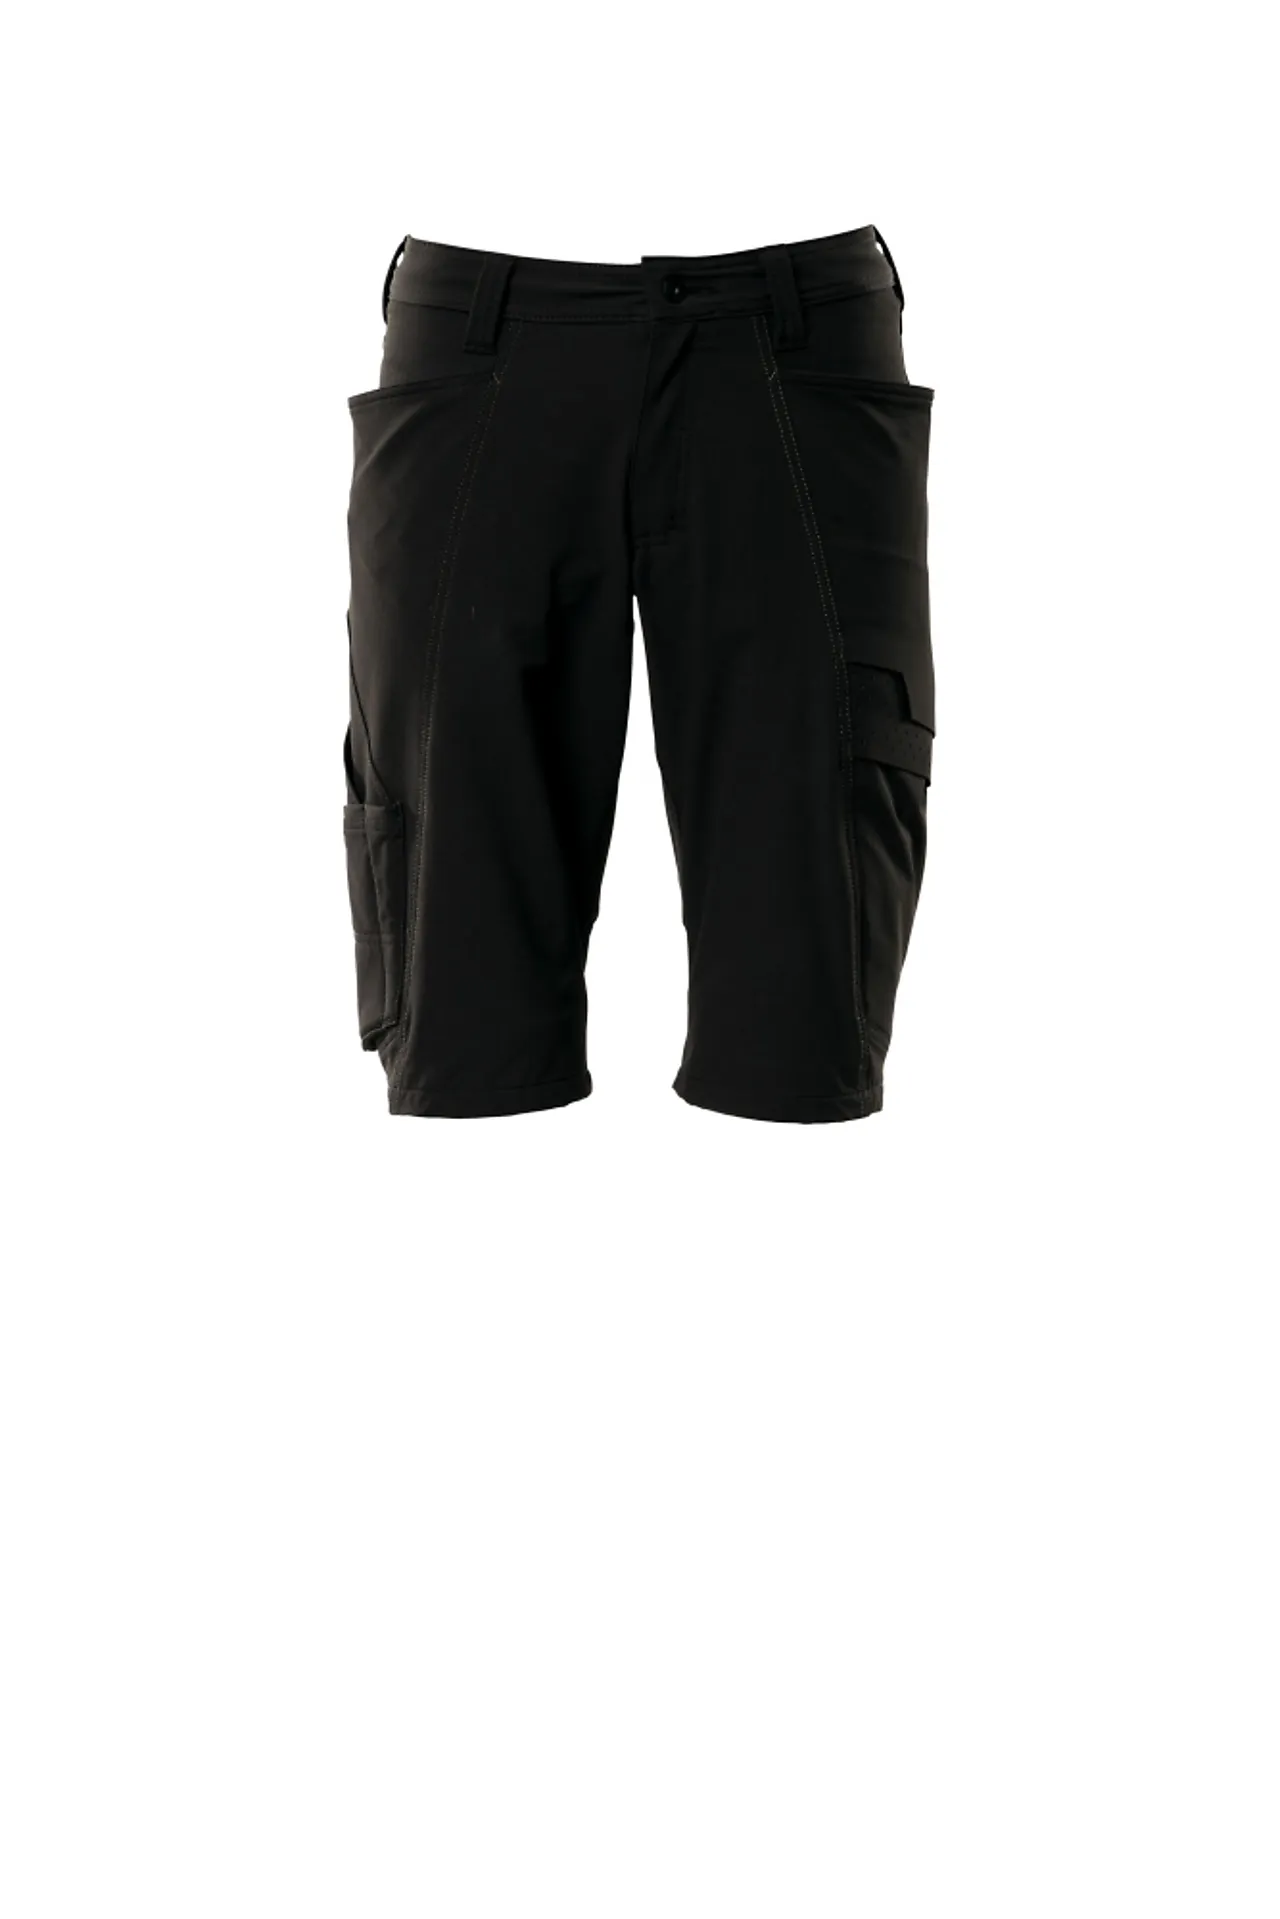 Shorts 18149 svart c58 shorts, fireveis-stretch, lav vekt